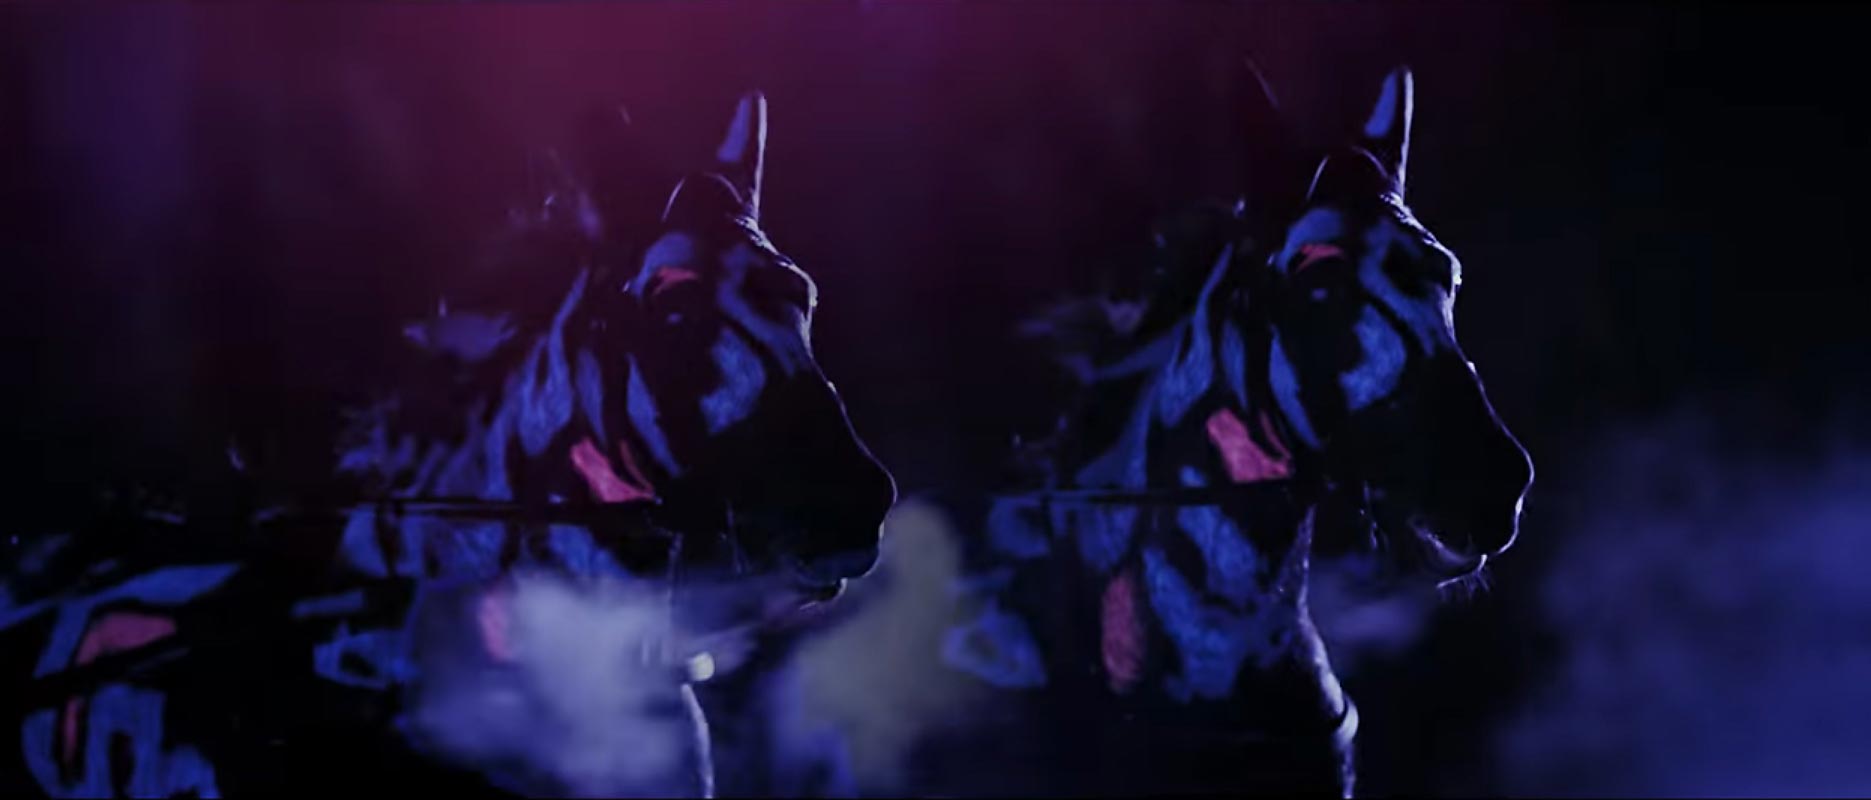 UV body painting on horses for TV commercial. Artist: Riina Laine